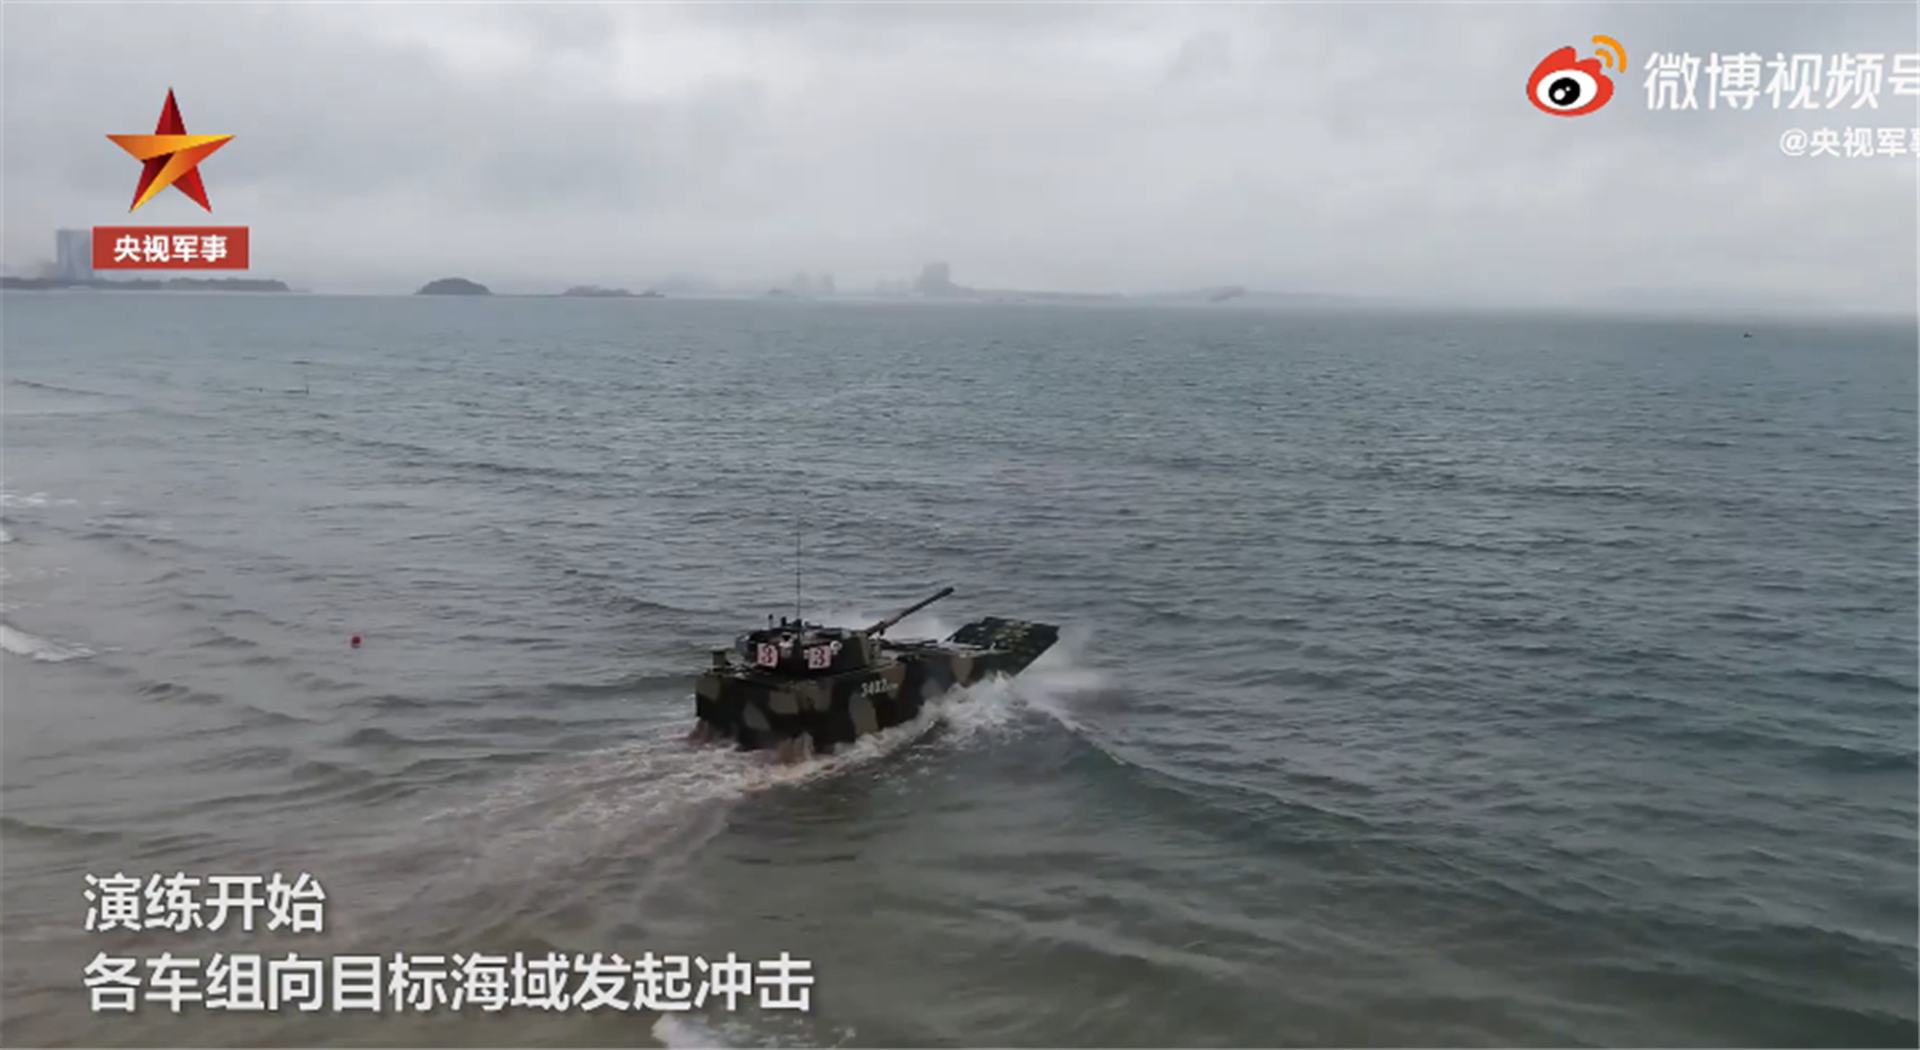 两栖装甲车向目标海域发起冲击。（中国央视截图）